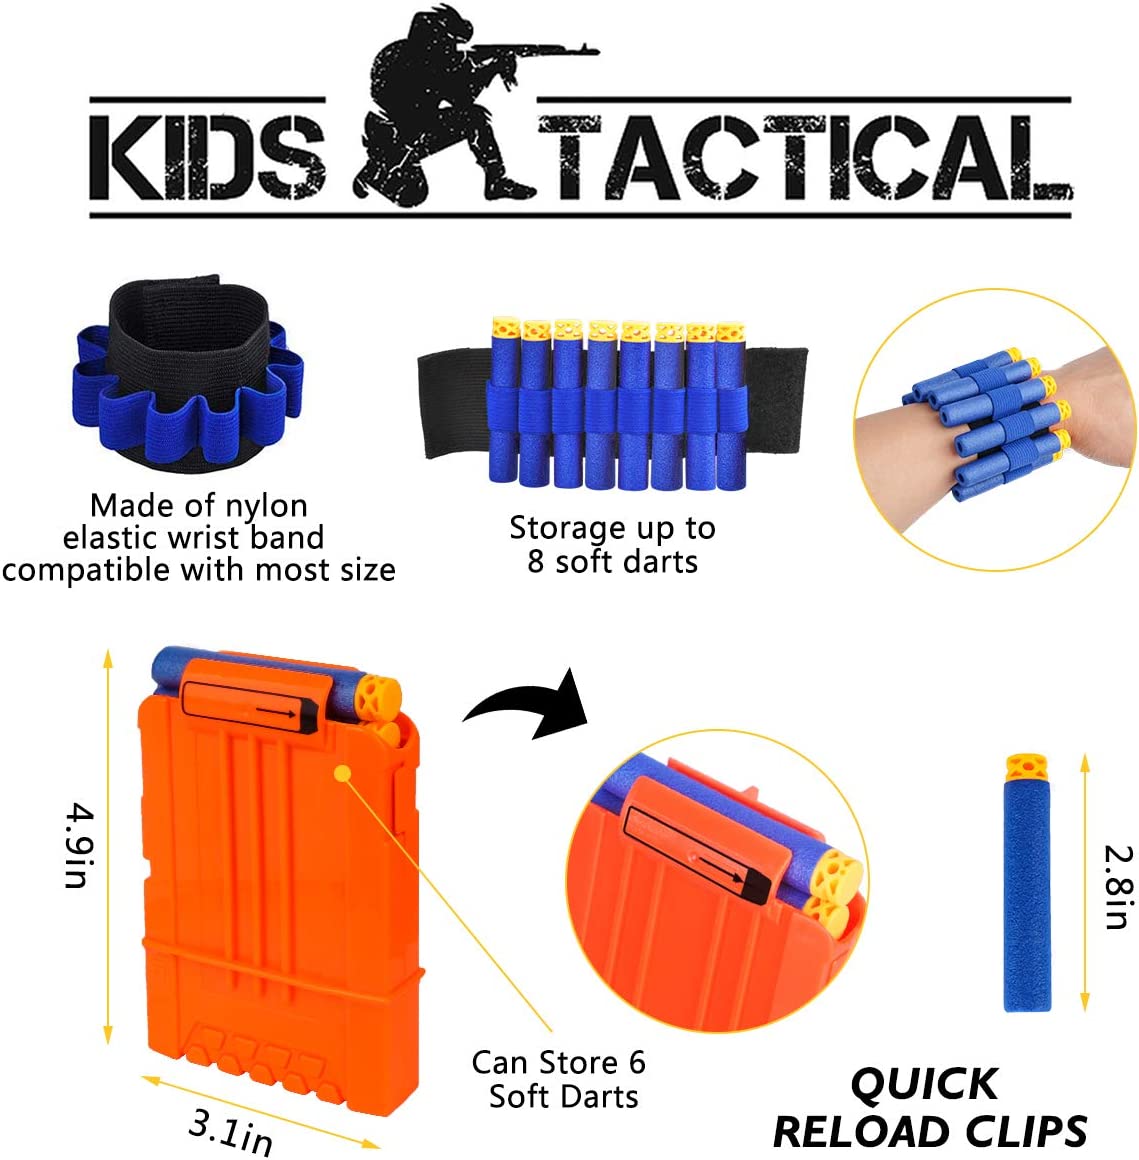 Kit de chaleco táctico para niño